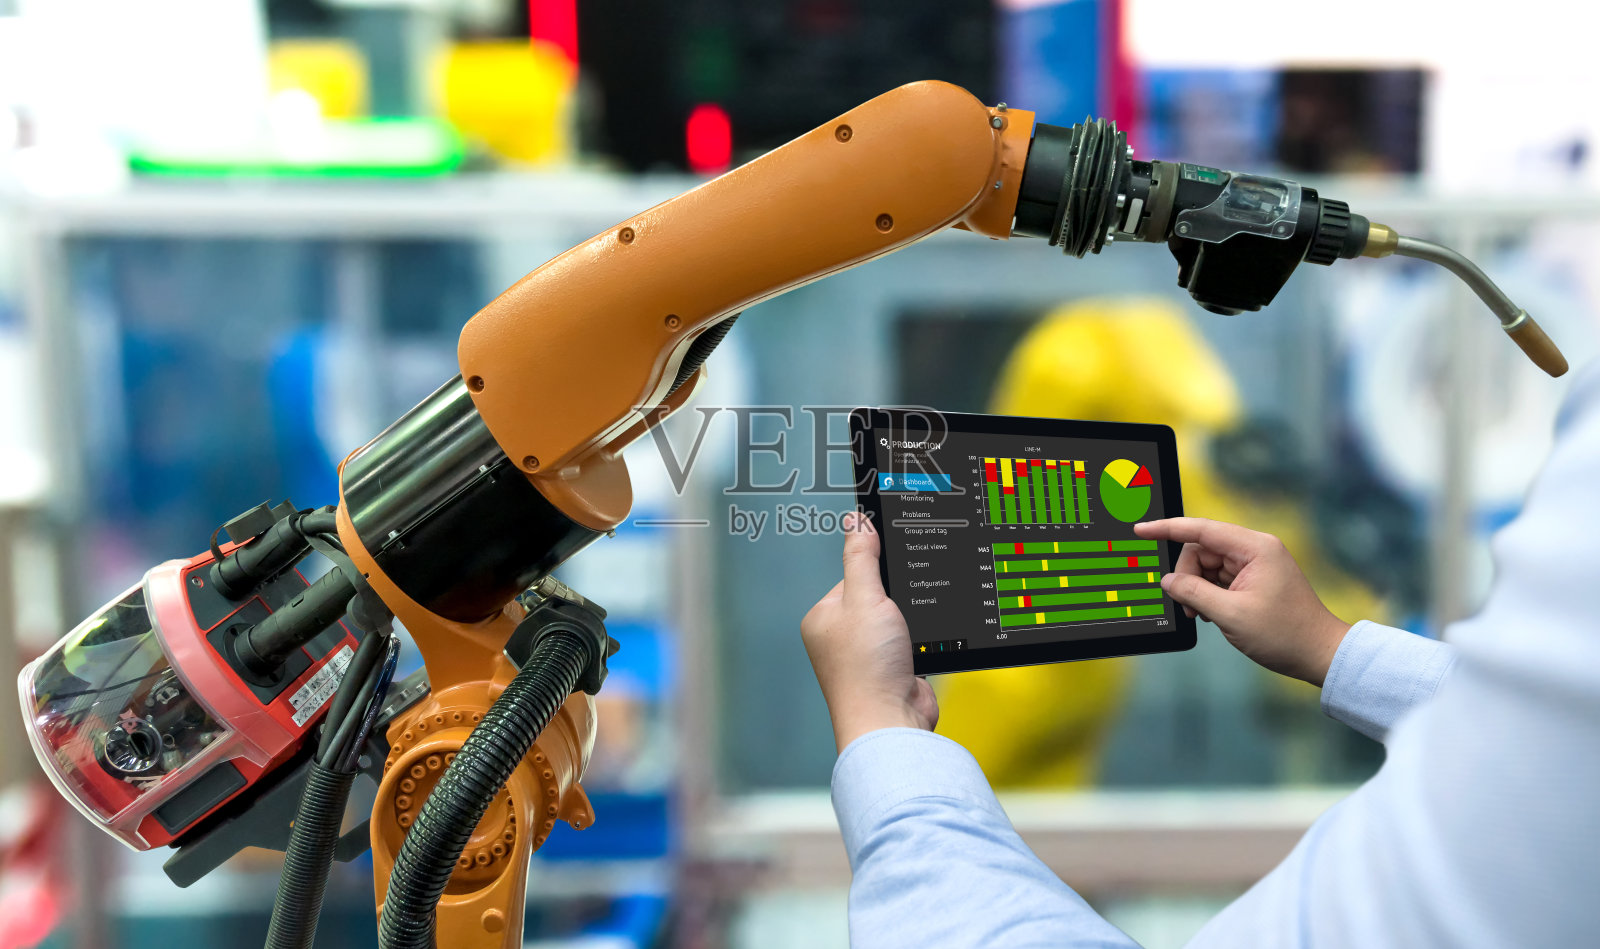 工程师经理手用平板，重型自动化机器人手臂机器在智能工厂工业用平板实时监控生产系统。工业第四物联网概念。照片摄影图片